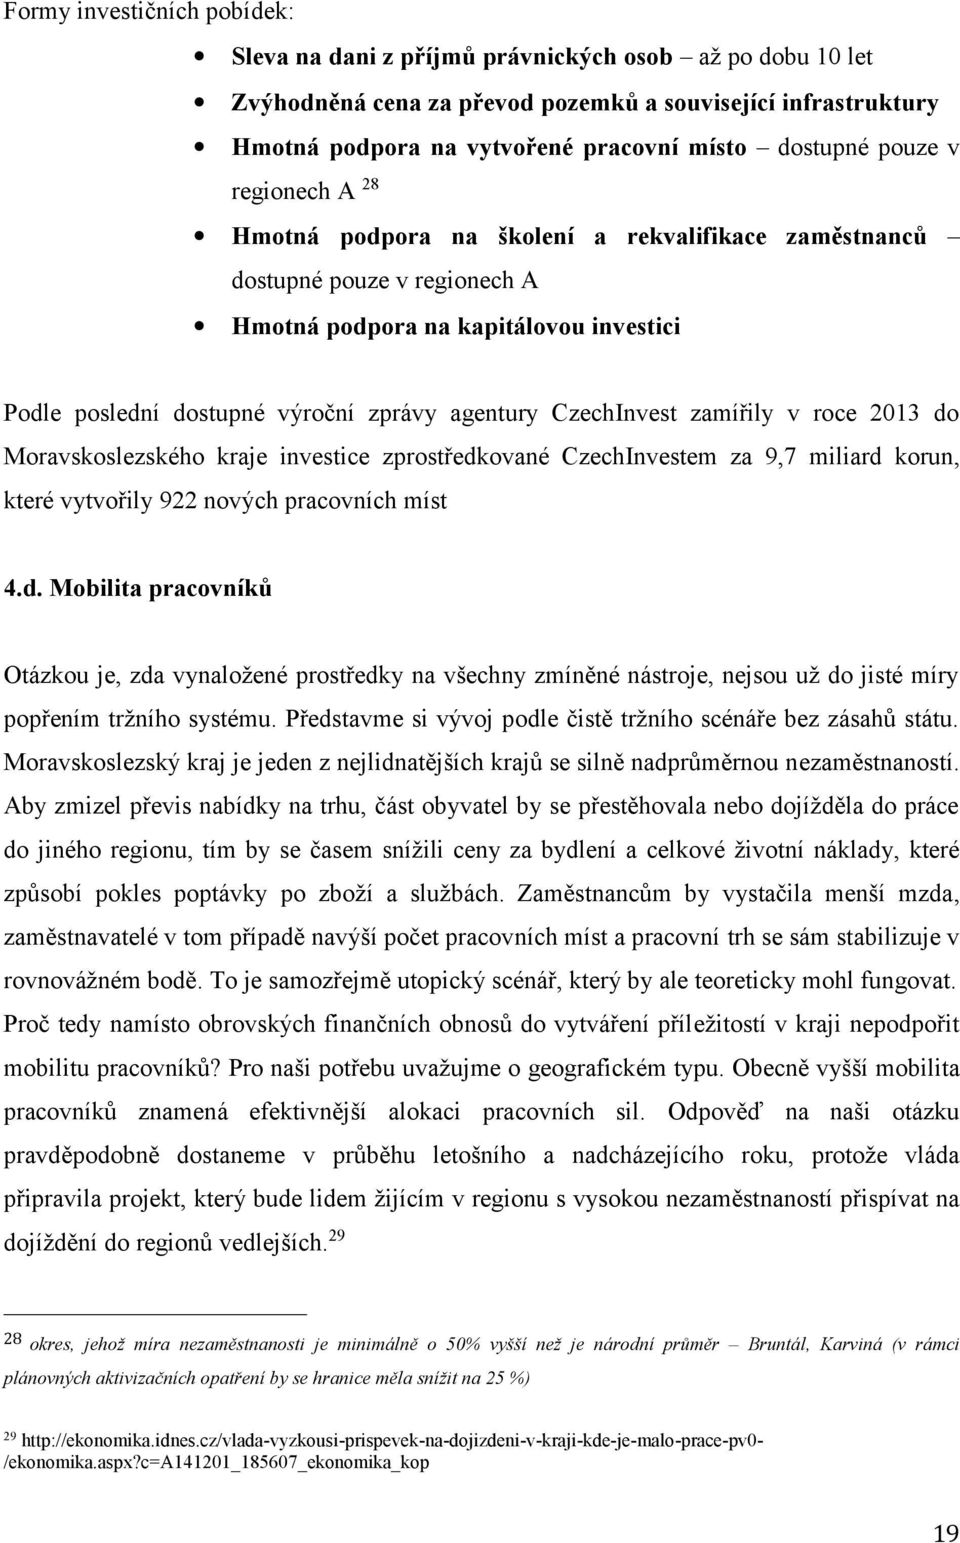 agentury CzechInvest zamířily v roce 2013 do Moravskoslezského kraje investice zprostředkované CzechInvestem za 9,7 miliard korun, které vytvořily 922 nových pracovních míst 4.d. Mobilita pracovníků Otázkou je, zda vynaložené prostředky na všechny zmíněné nástroje, nejsou už do jisté míry popřením tržního systému.